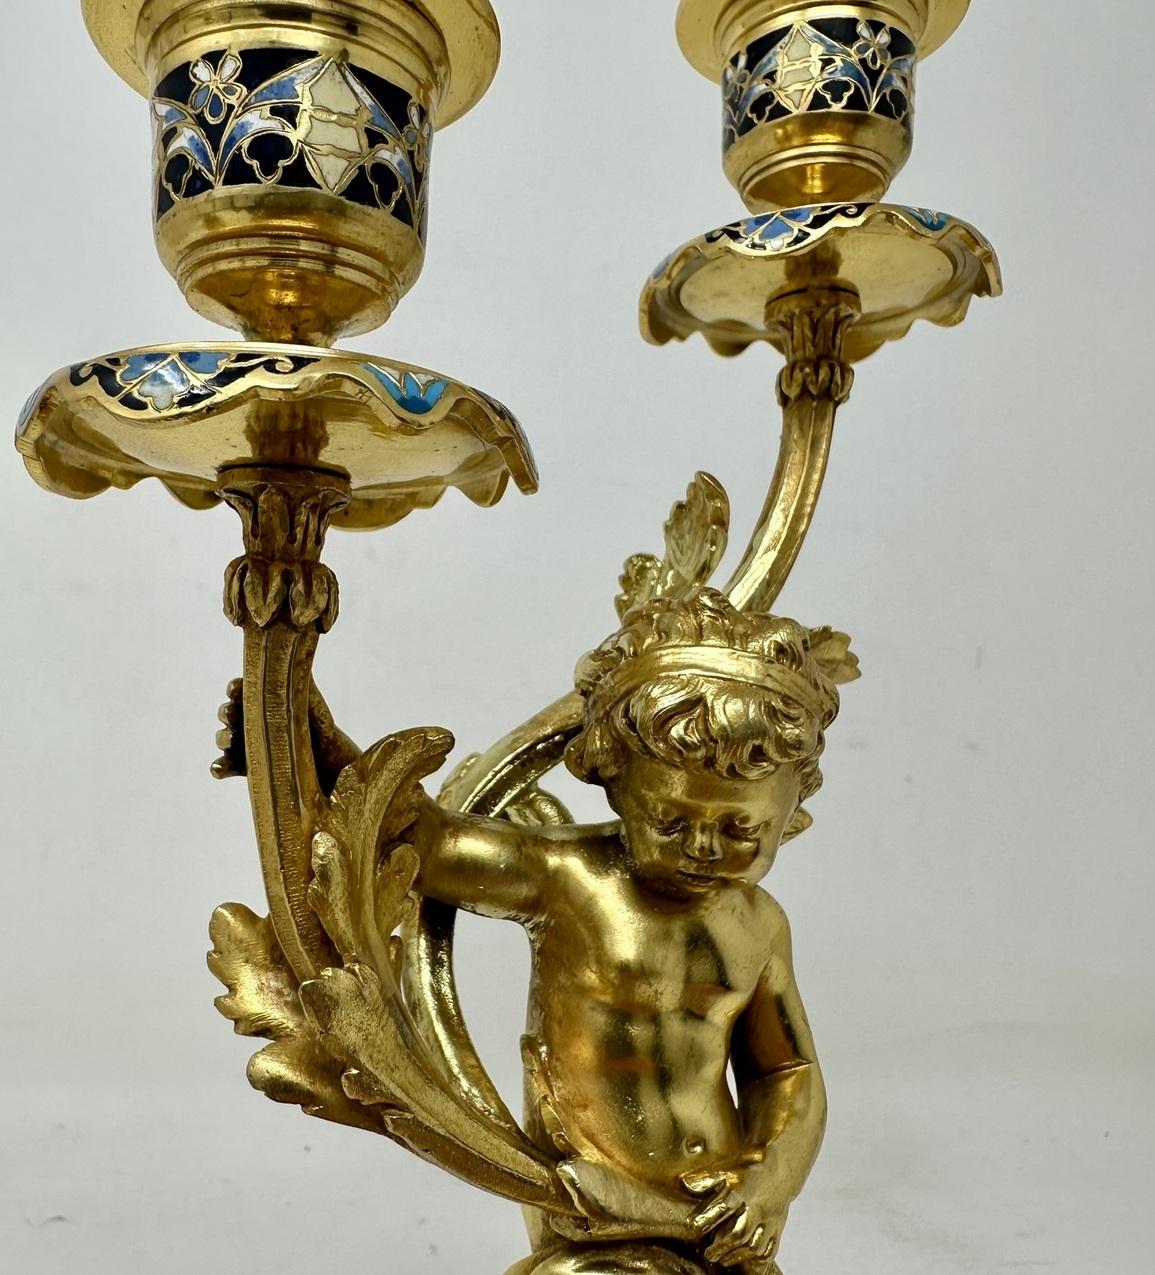 Paire de candélabres à deux bras en bronze Dore et Champleve Cloisonne, de qualité exceptionnelle et aux proportions généreuses. Troisième quart du XIXe siècle, peut-être plus tôt. 

Cette magnifique paire est réalisée en bronze doré et en émail